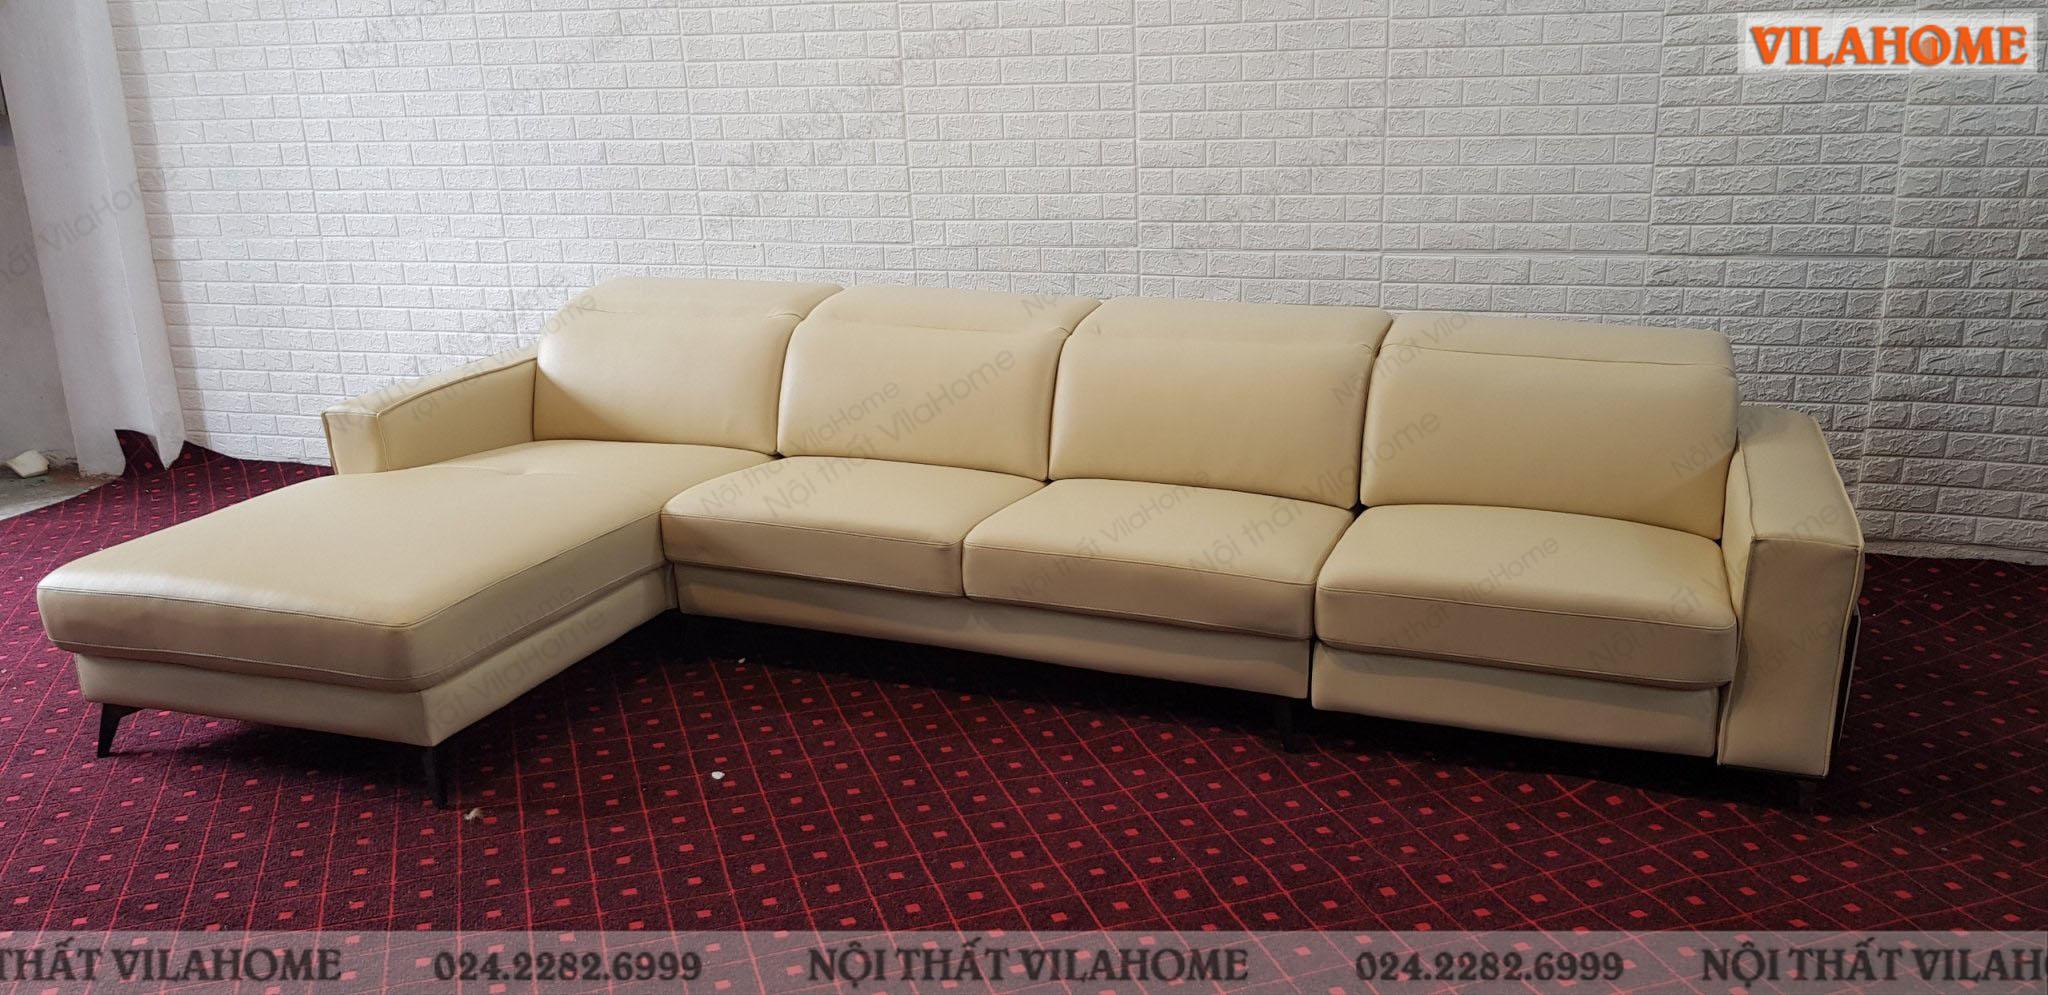 Sofa long biên màu kem